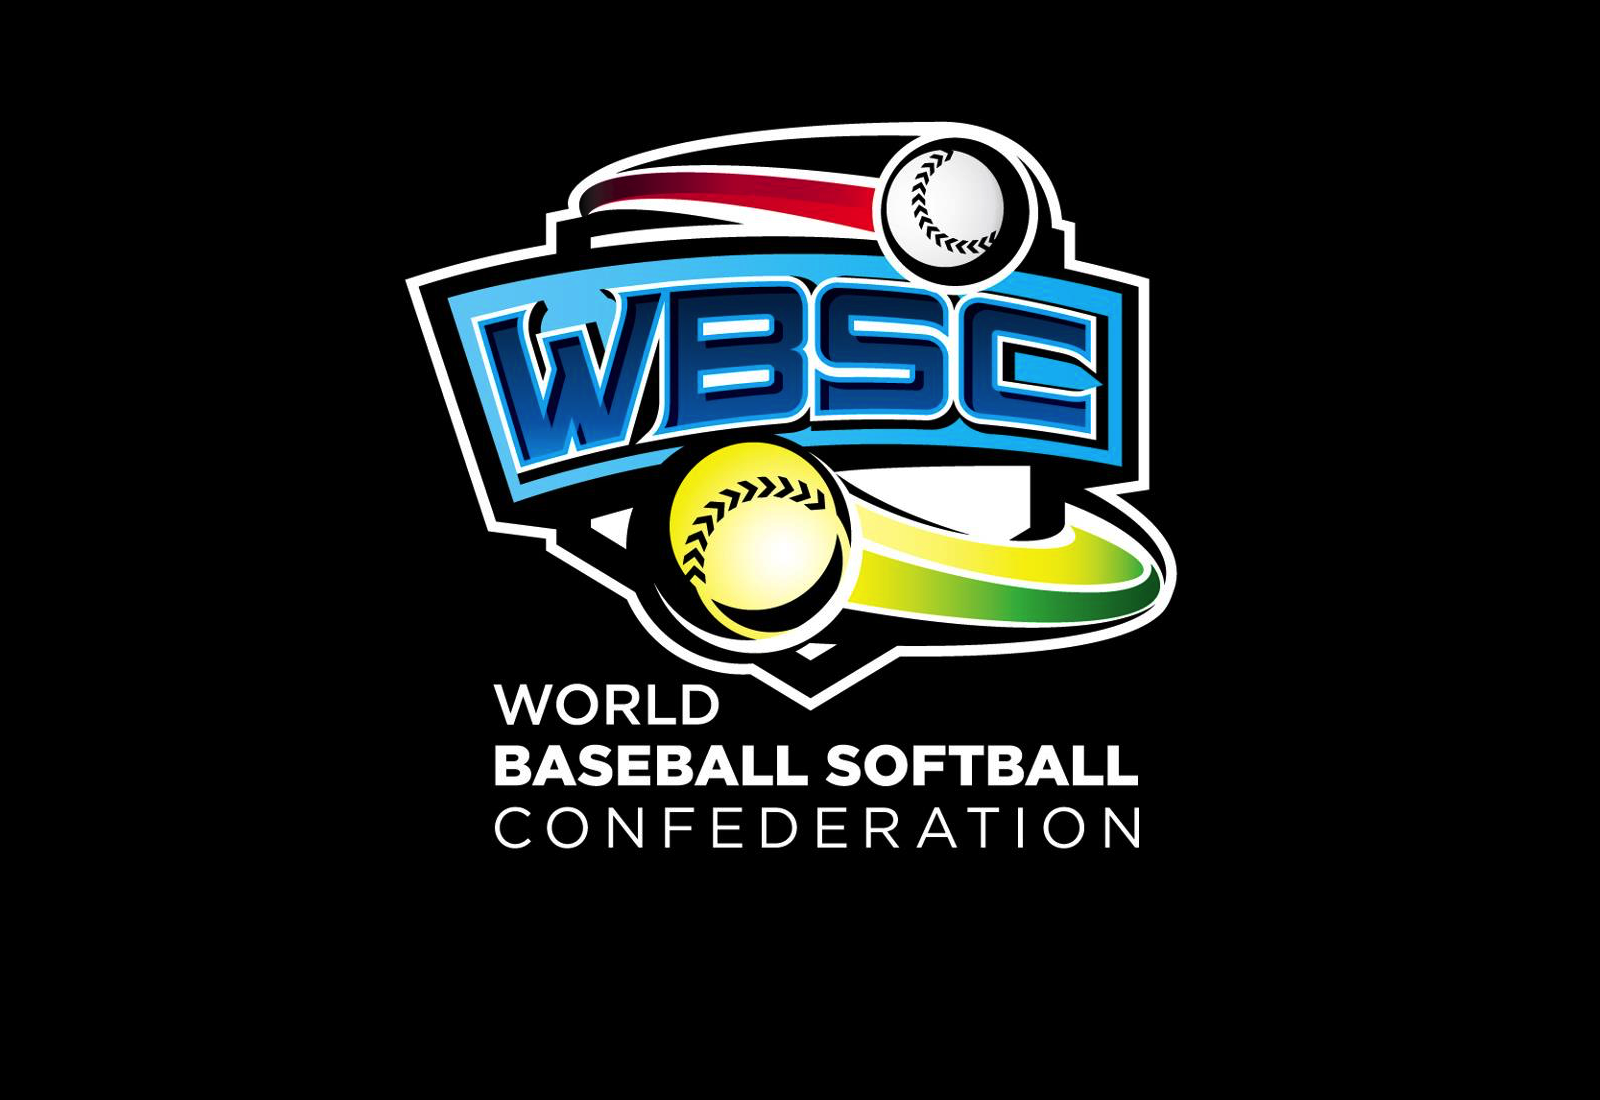 La Confédération mondiale de baseball softball à la recherche de sites pour ses prestigieux tournois de 2018 et  2019 !